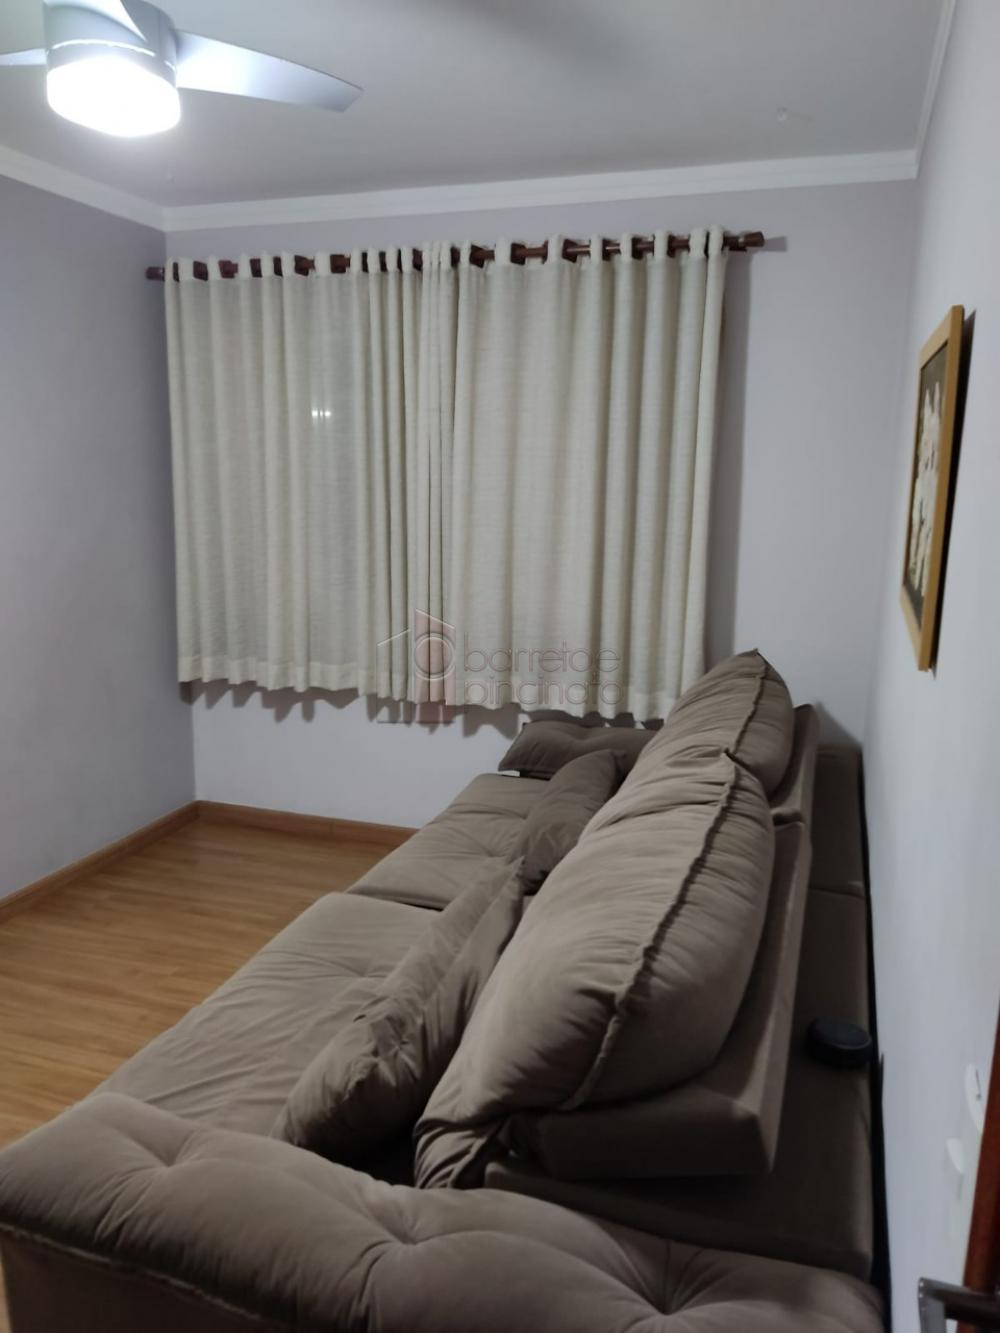 Comprar Apartamento / Padrão em Jundiaí R$ 245.000,00 - Foto 2